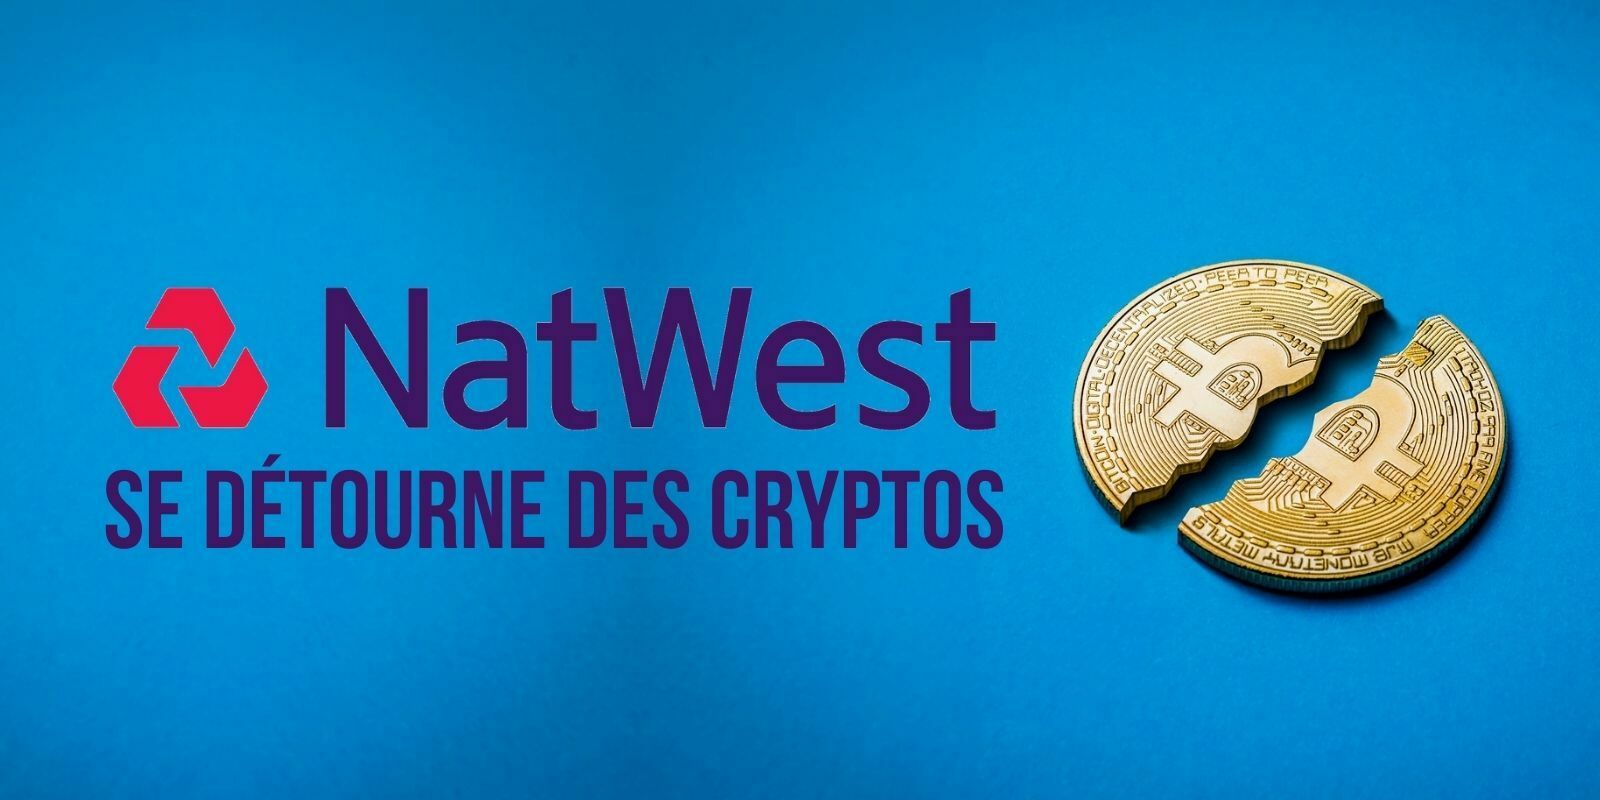 La banque britannique NatWest refuse de servir les clients qui acceptent les cryptomonnaies